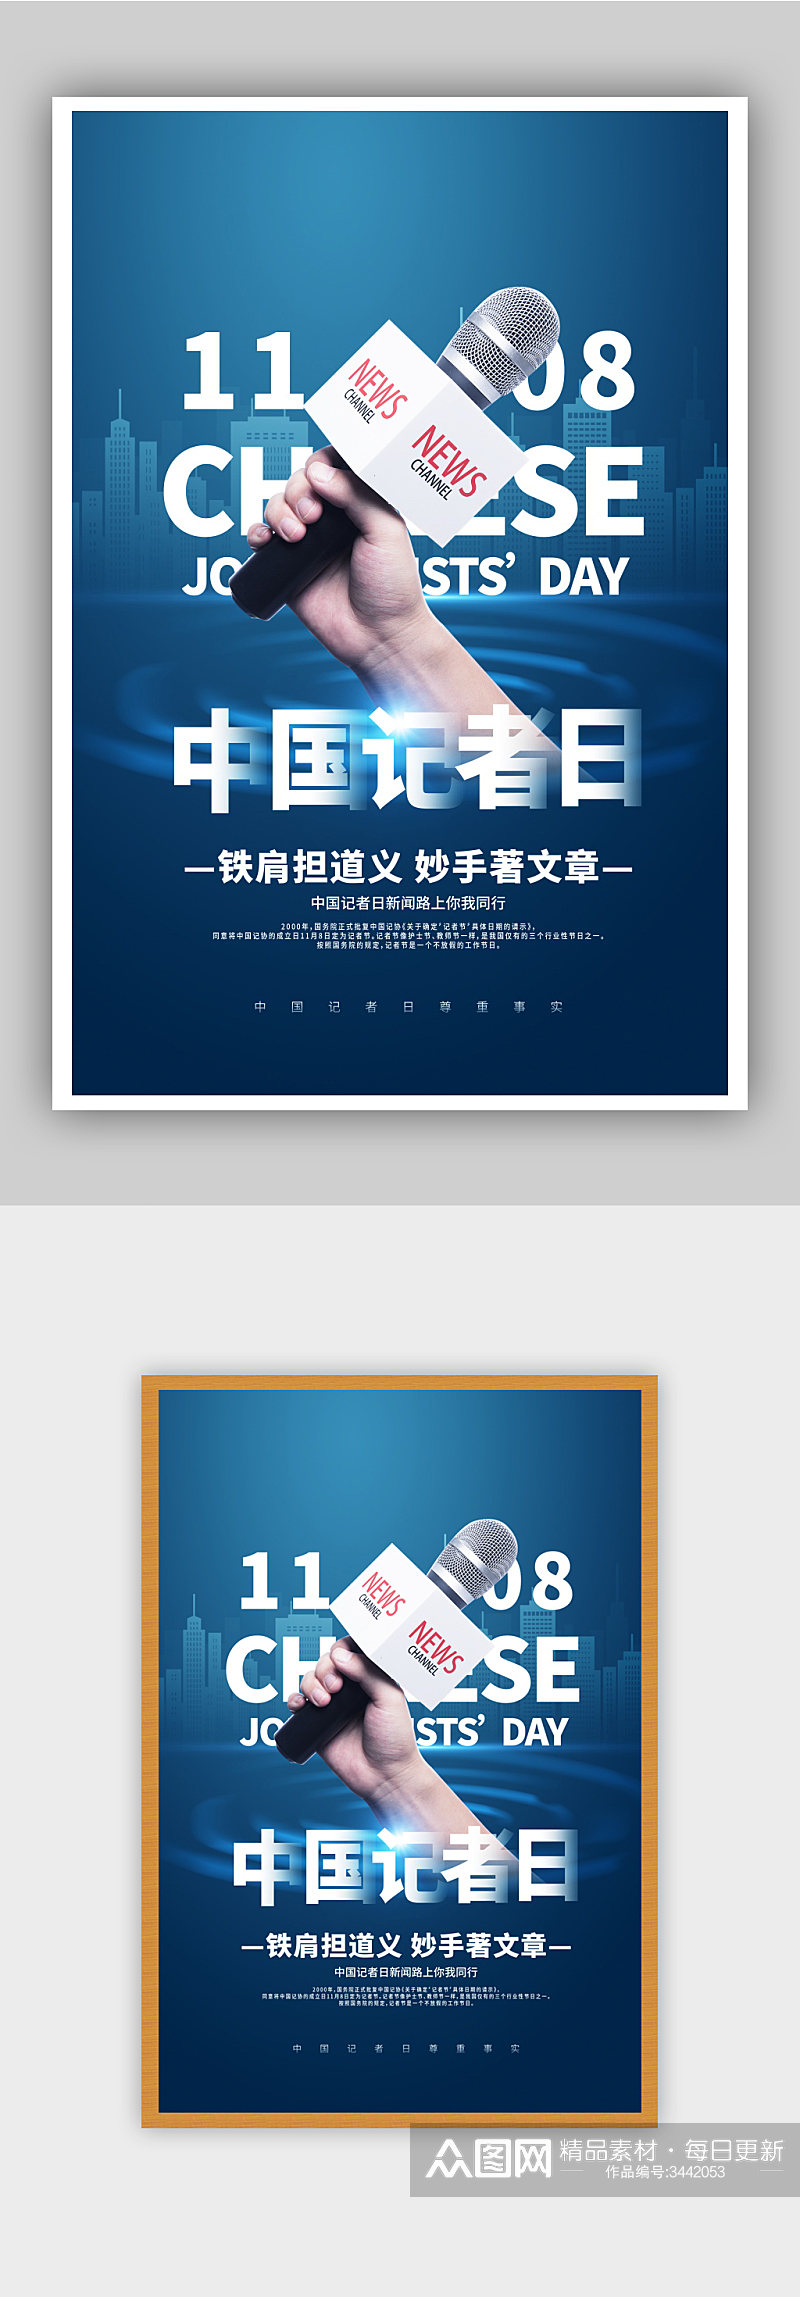 中国记者日蓝色宣传海报素材